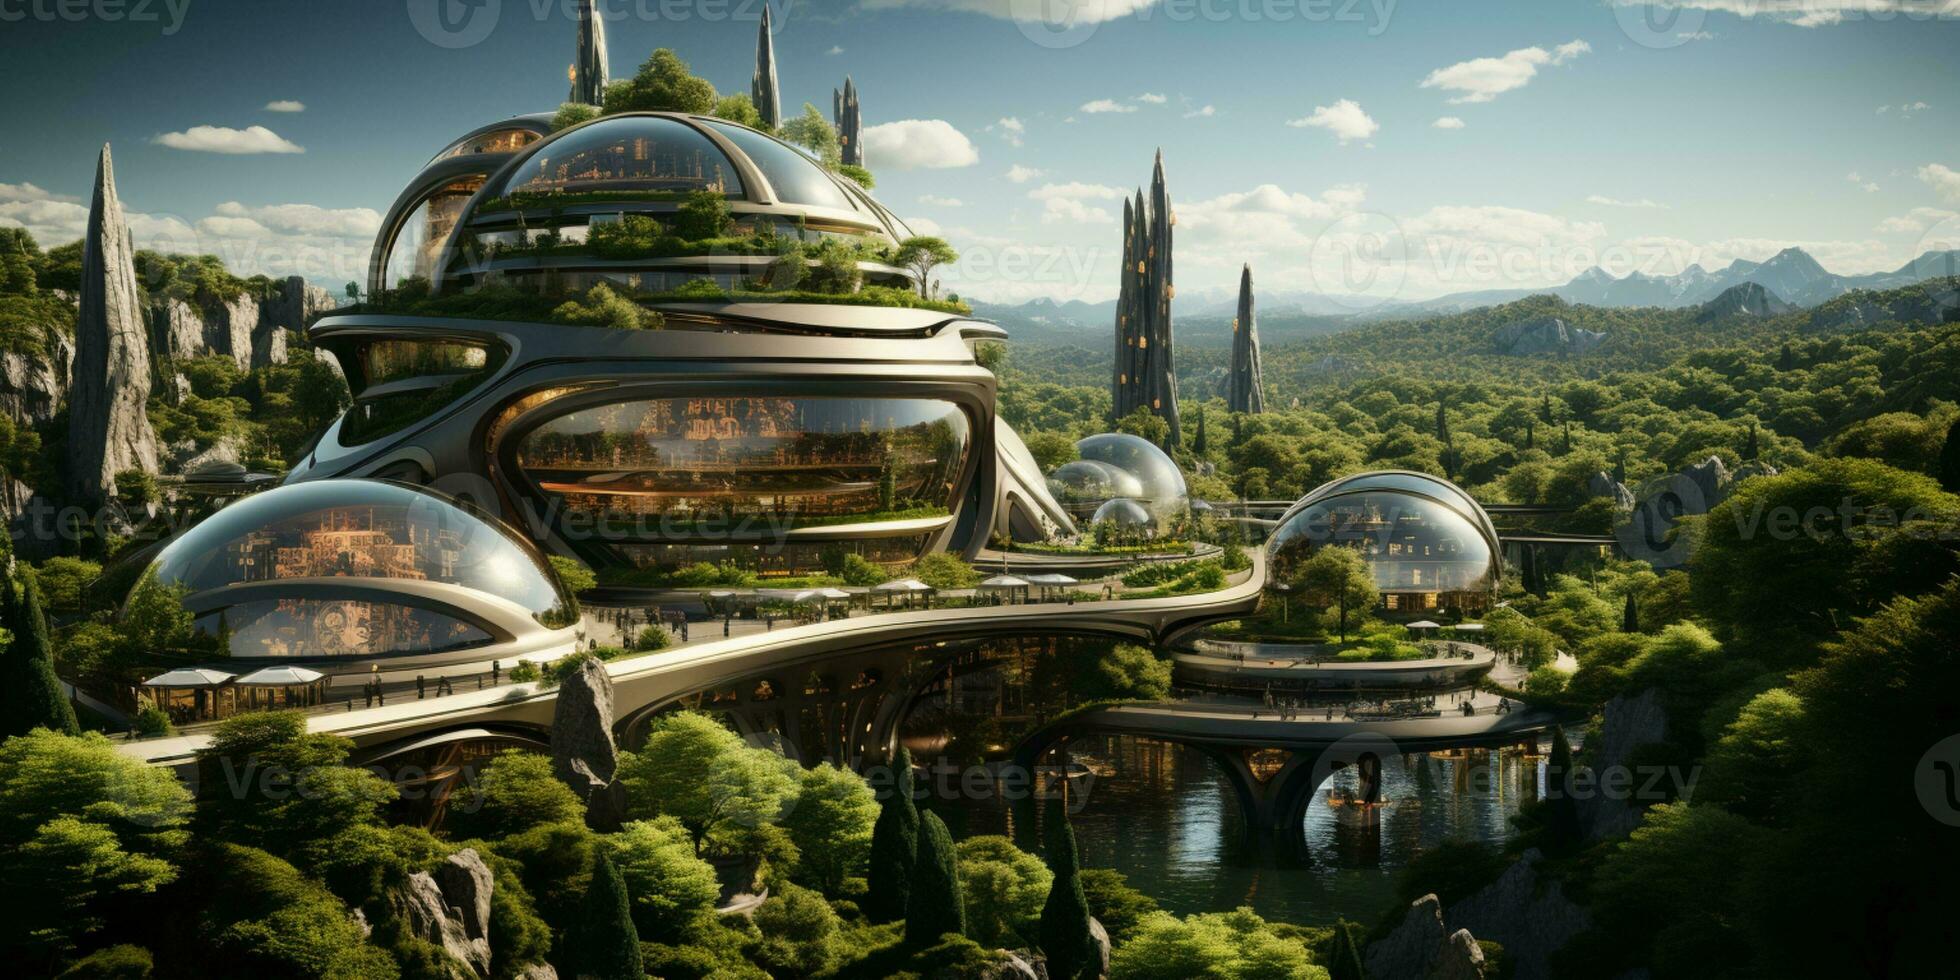 Futuristic green city architecture photo